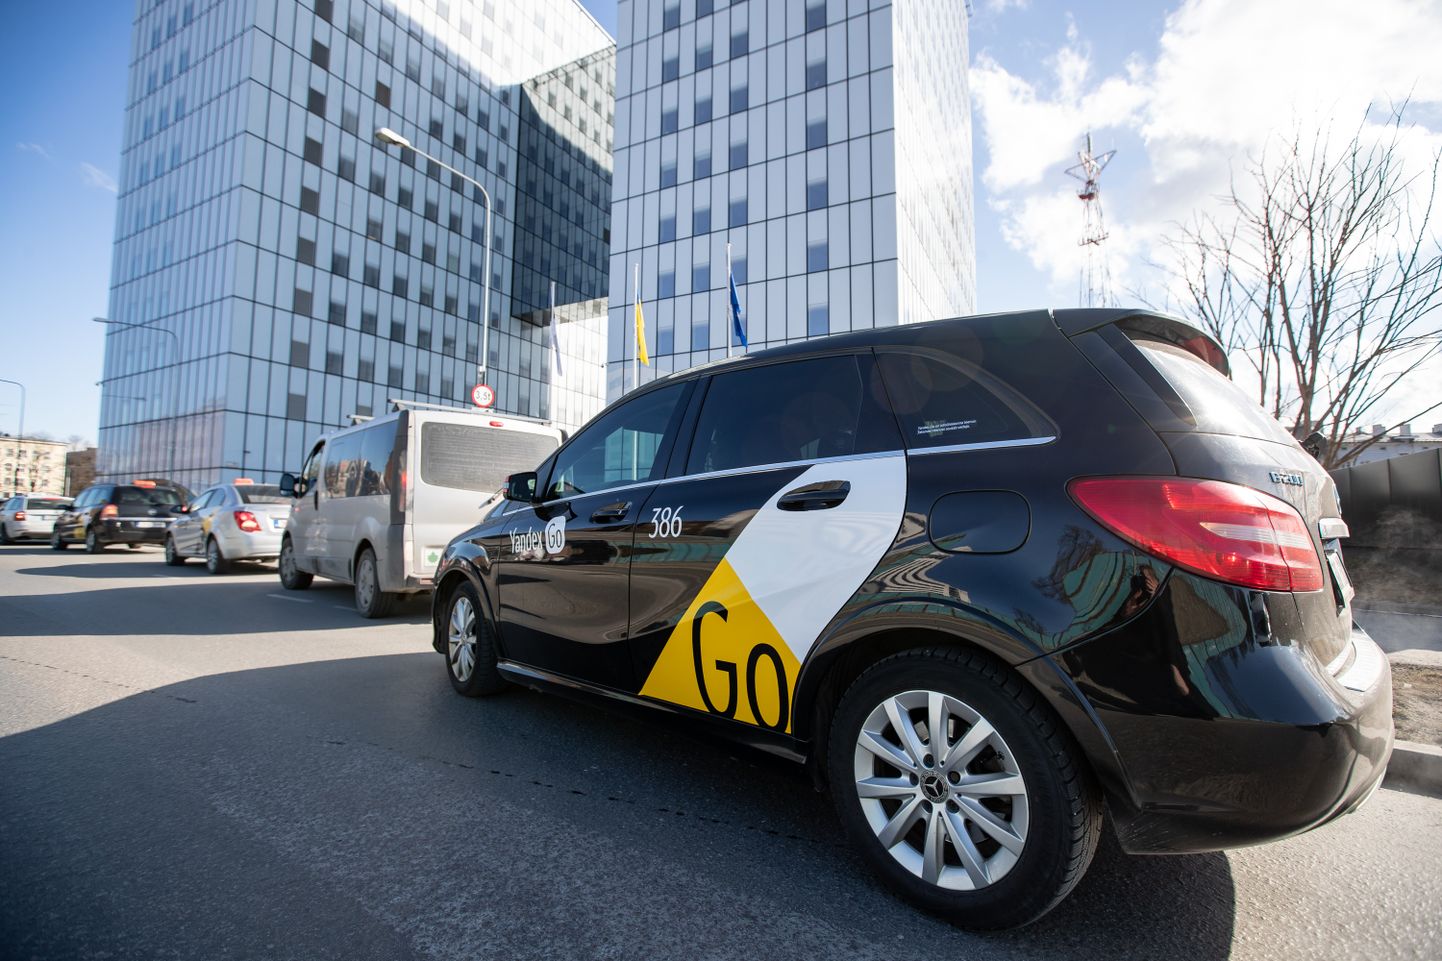 Yandexi taksojuhid korraldasid mullu 1. aprillil Tallinnas superministeeriumi ees ettevõtte tegevuse keelustamise vastu  meeleavalduse.